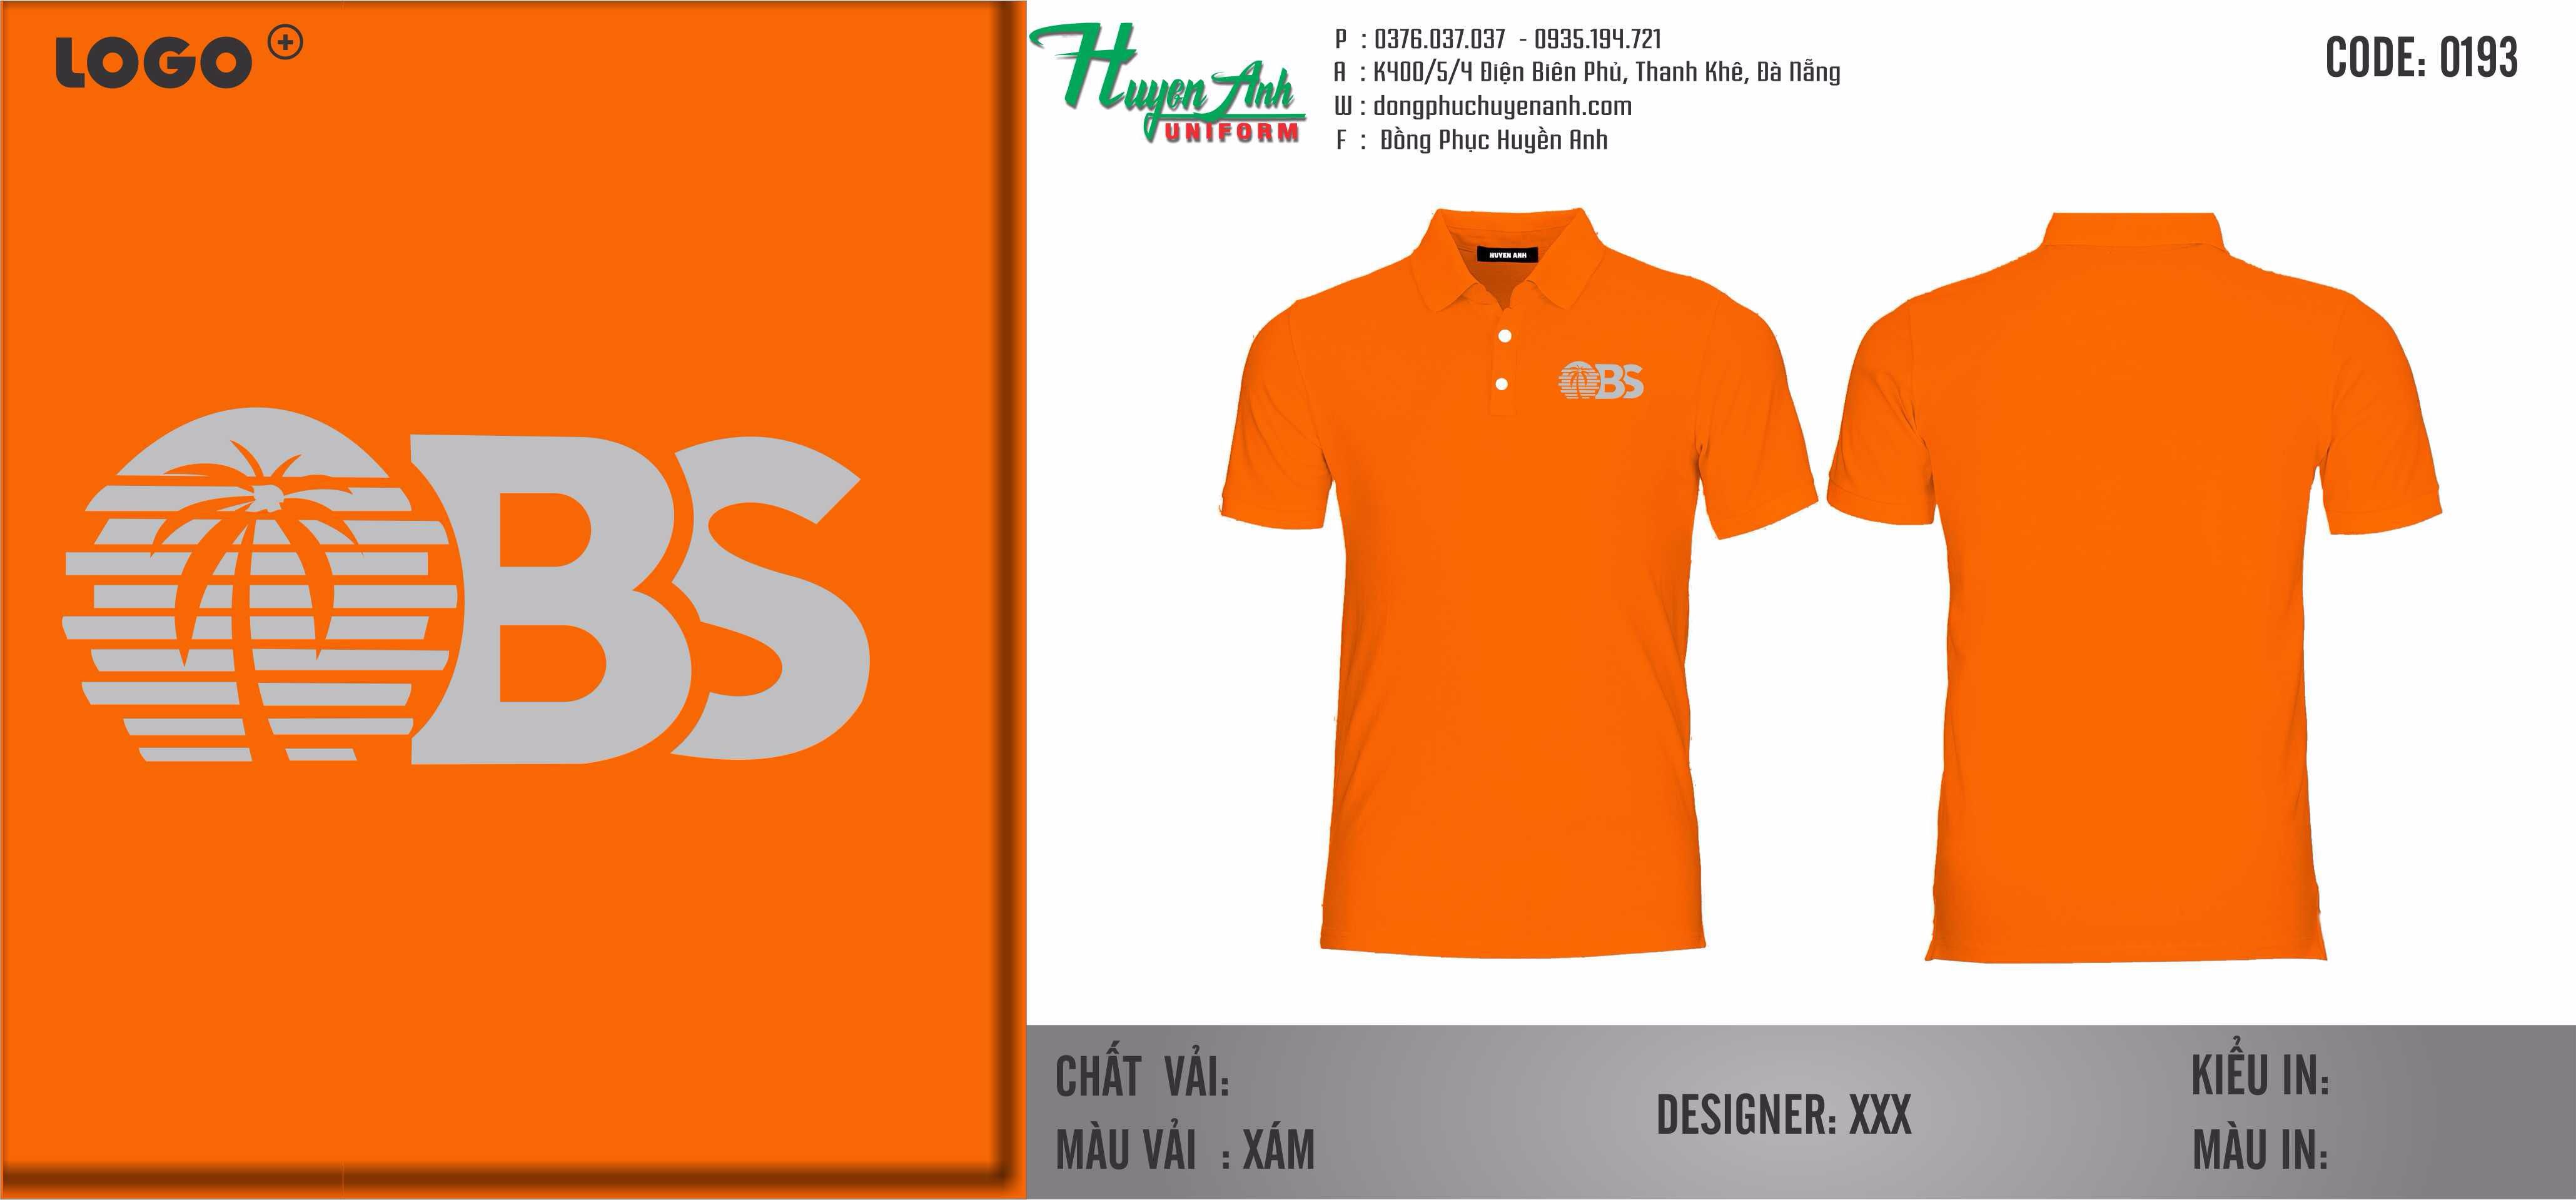 Đồng phục áo thun công ty obs Quang Nam - may đồng phục giá rẻ tại Quảng Nam